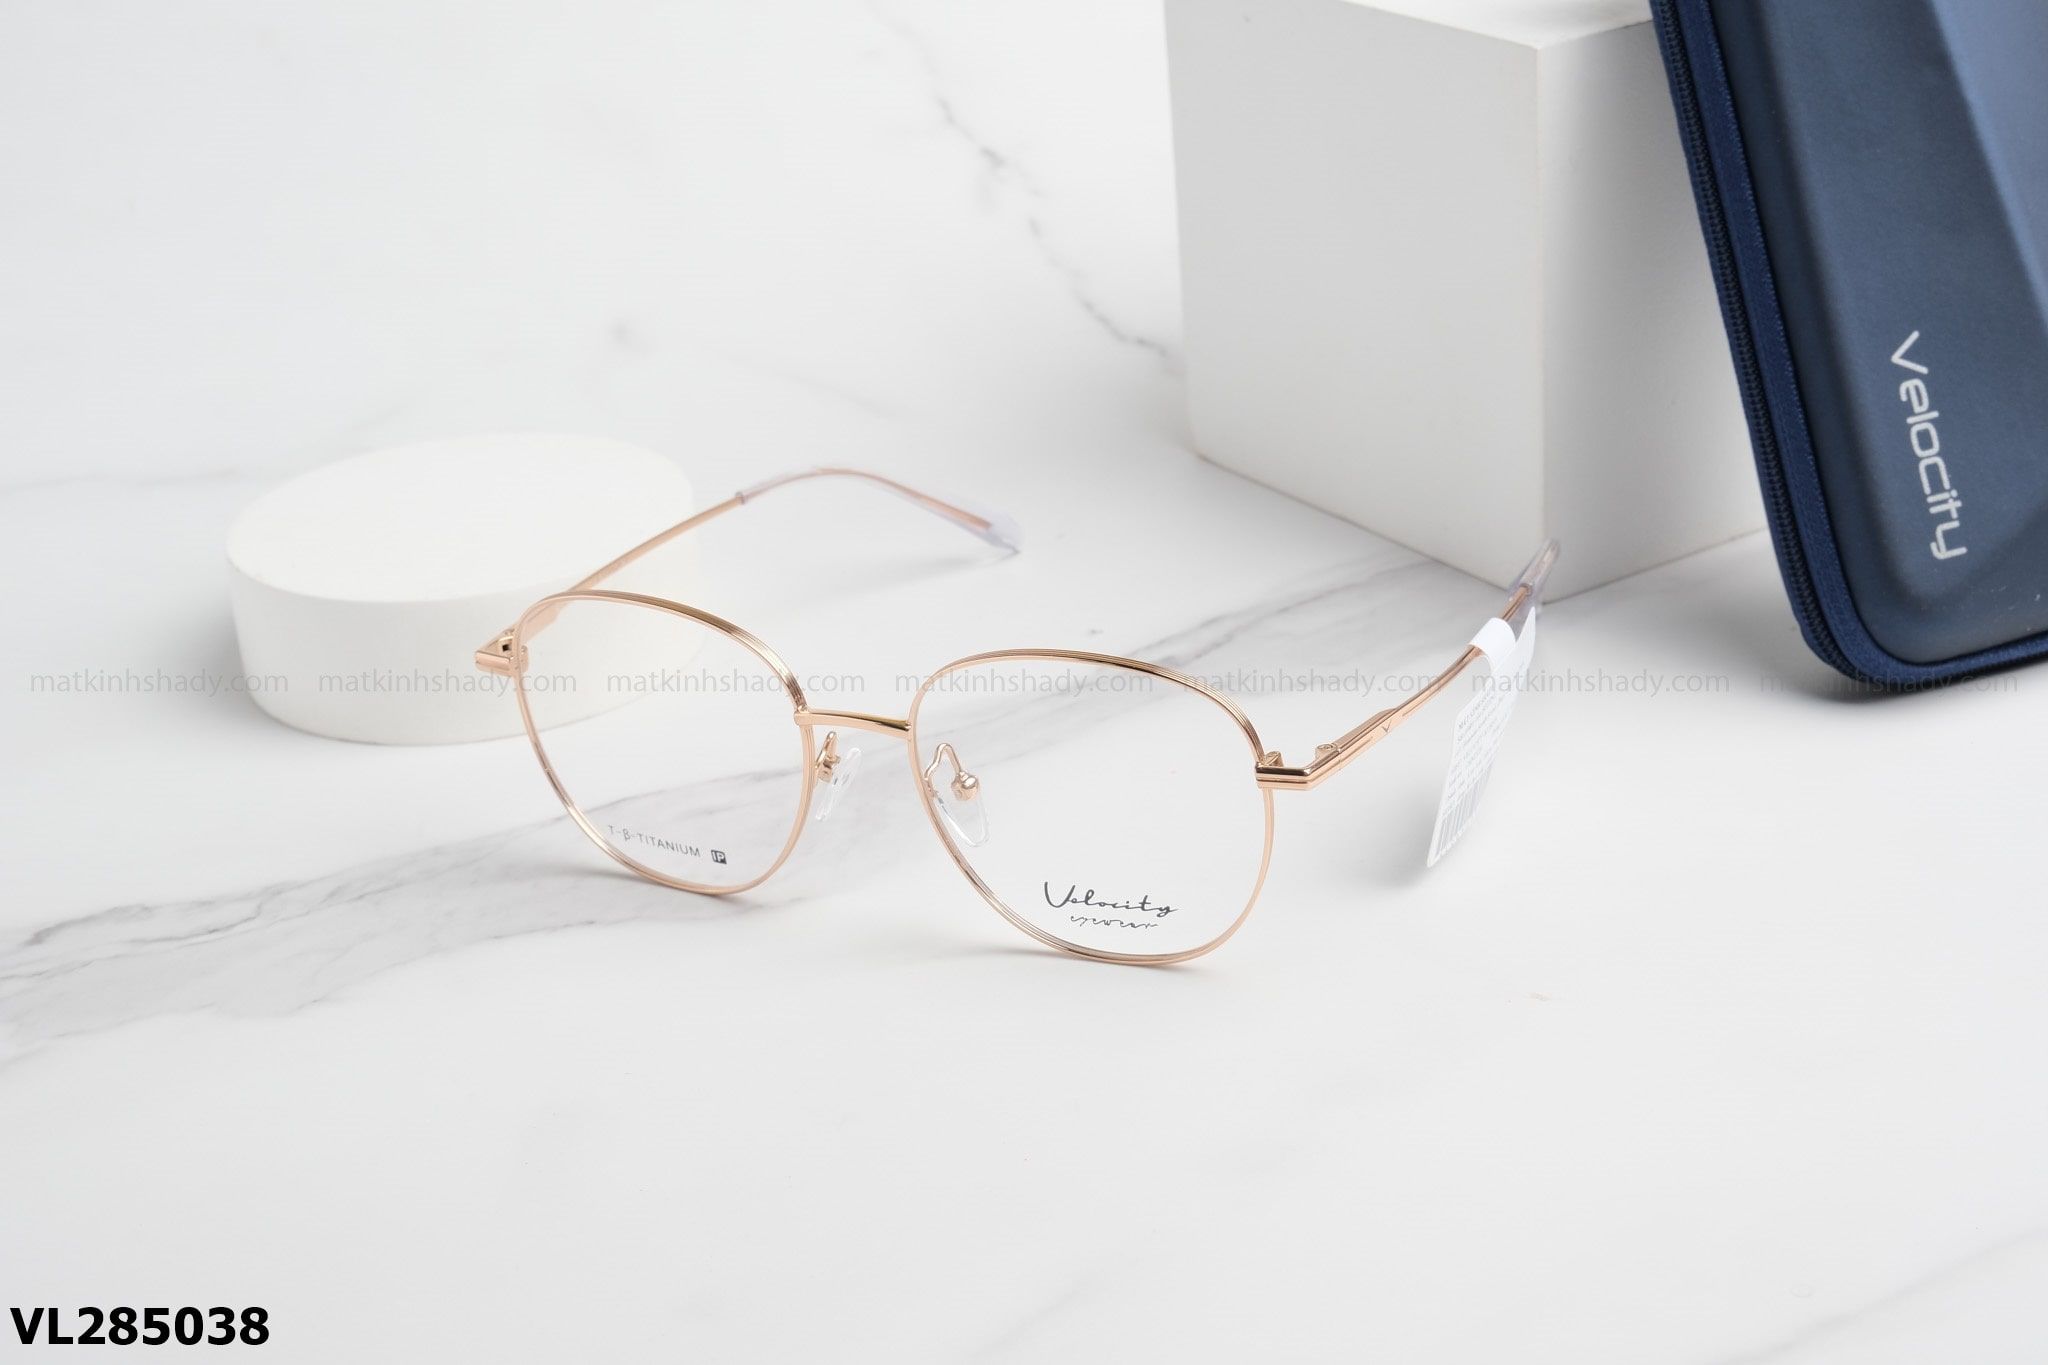  Velocity Eyewear - Glasses - VL285038 